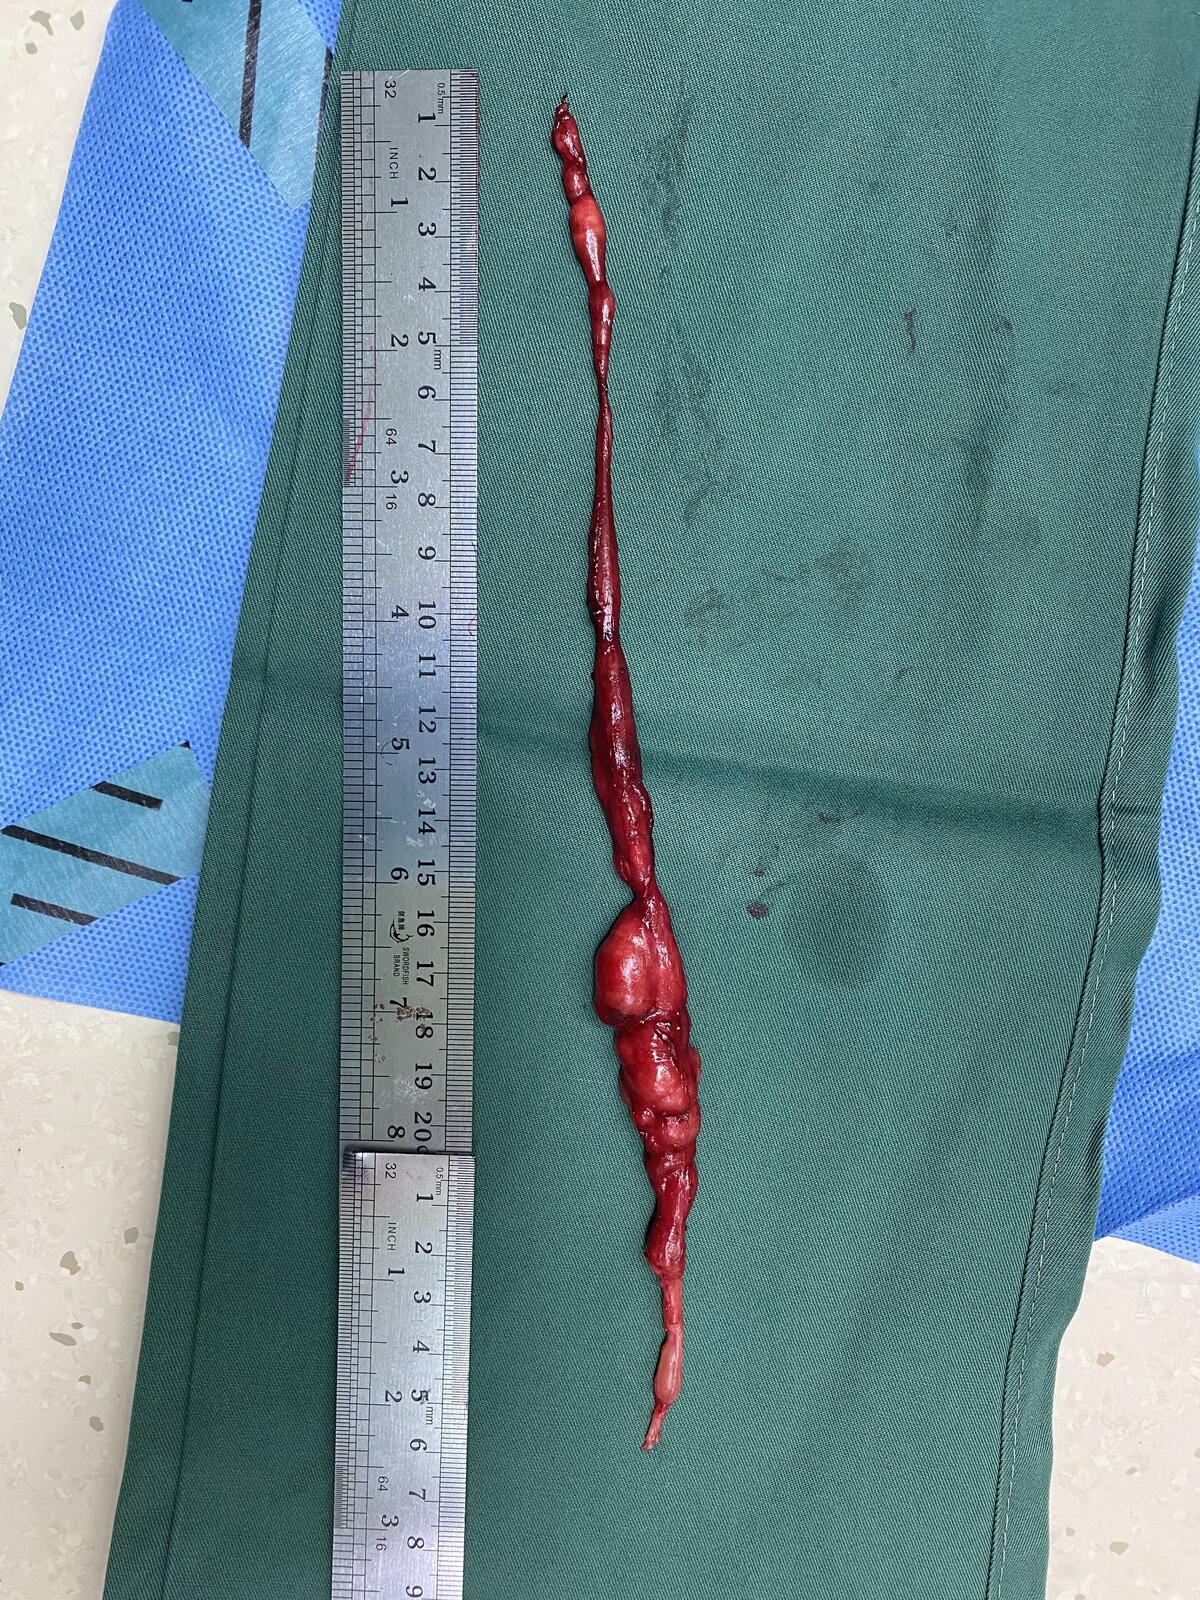 26厘米长神经鞘瘤手术一例 